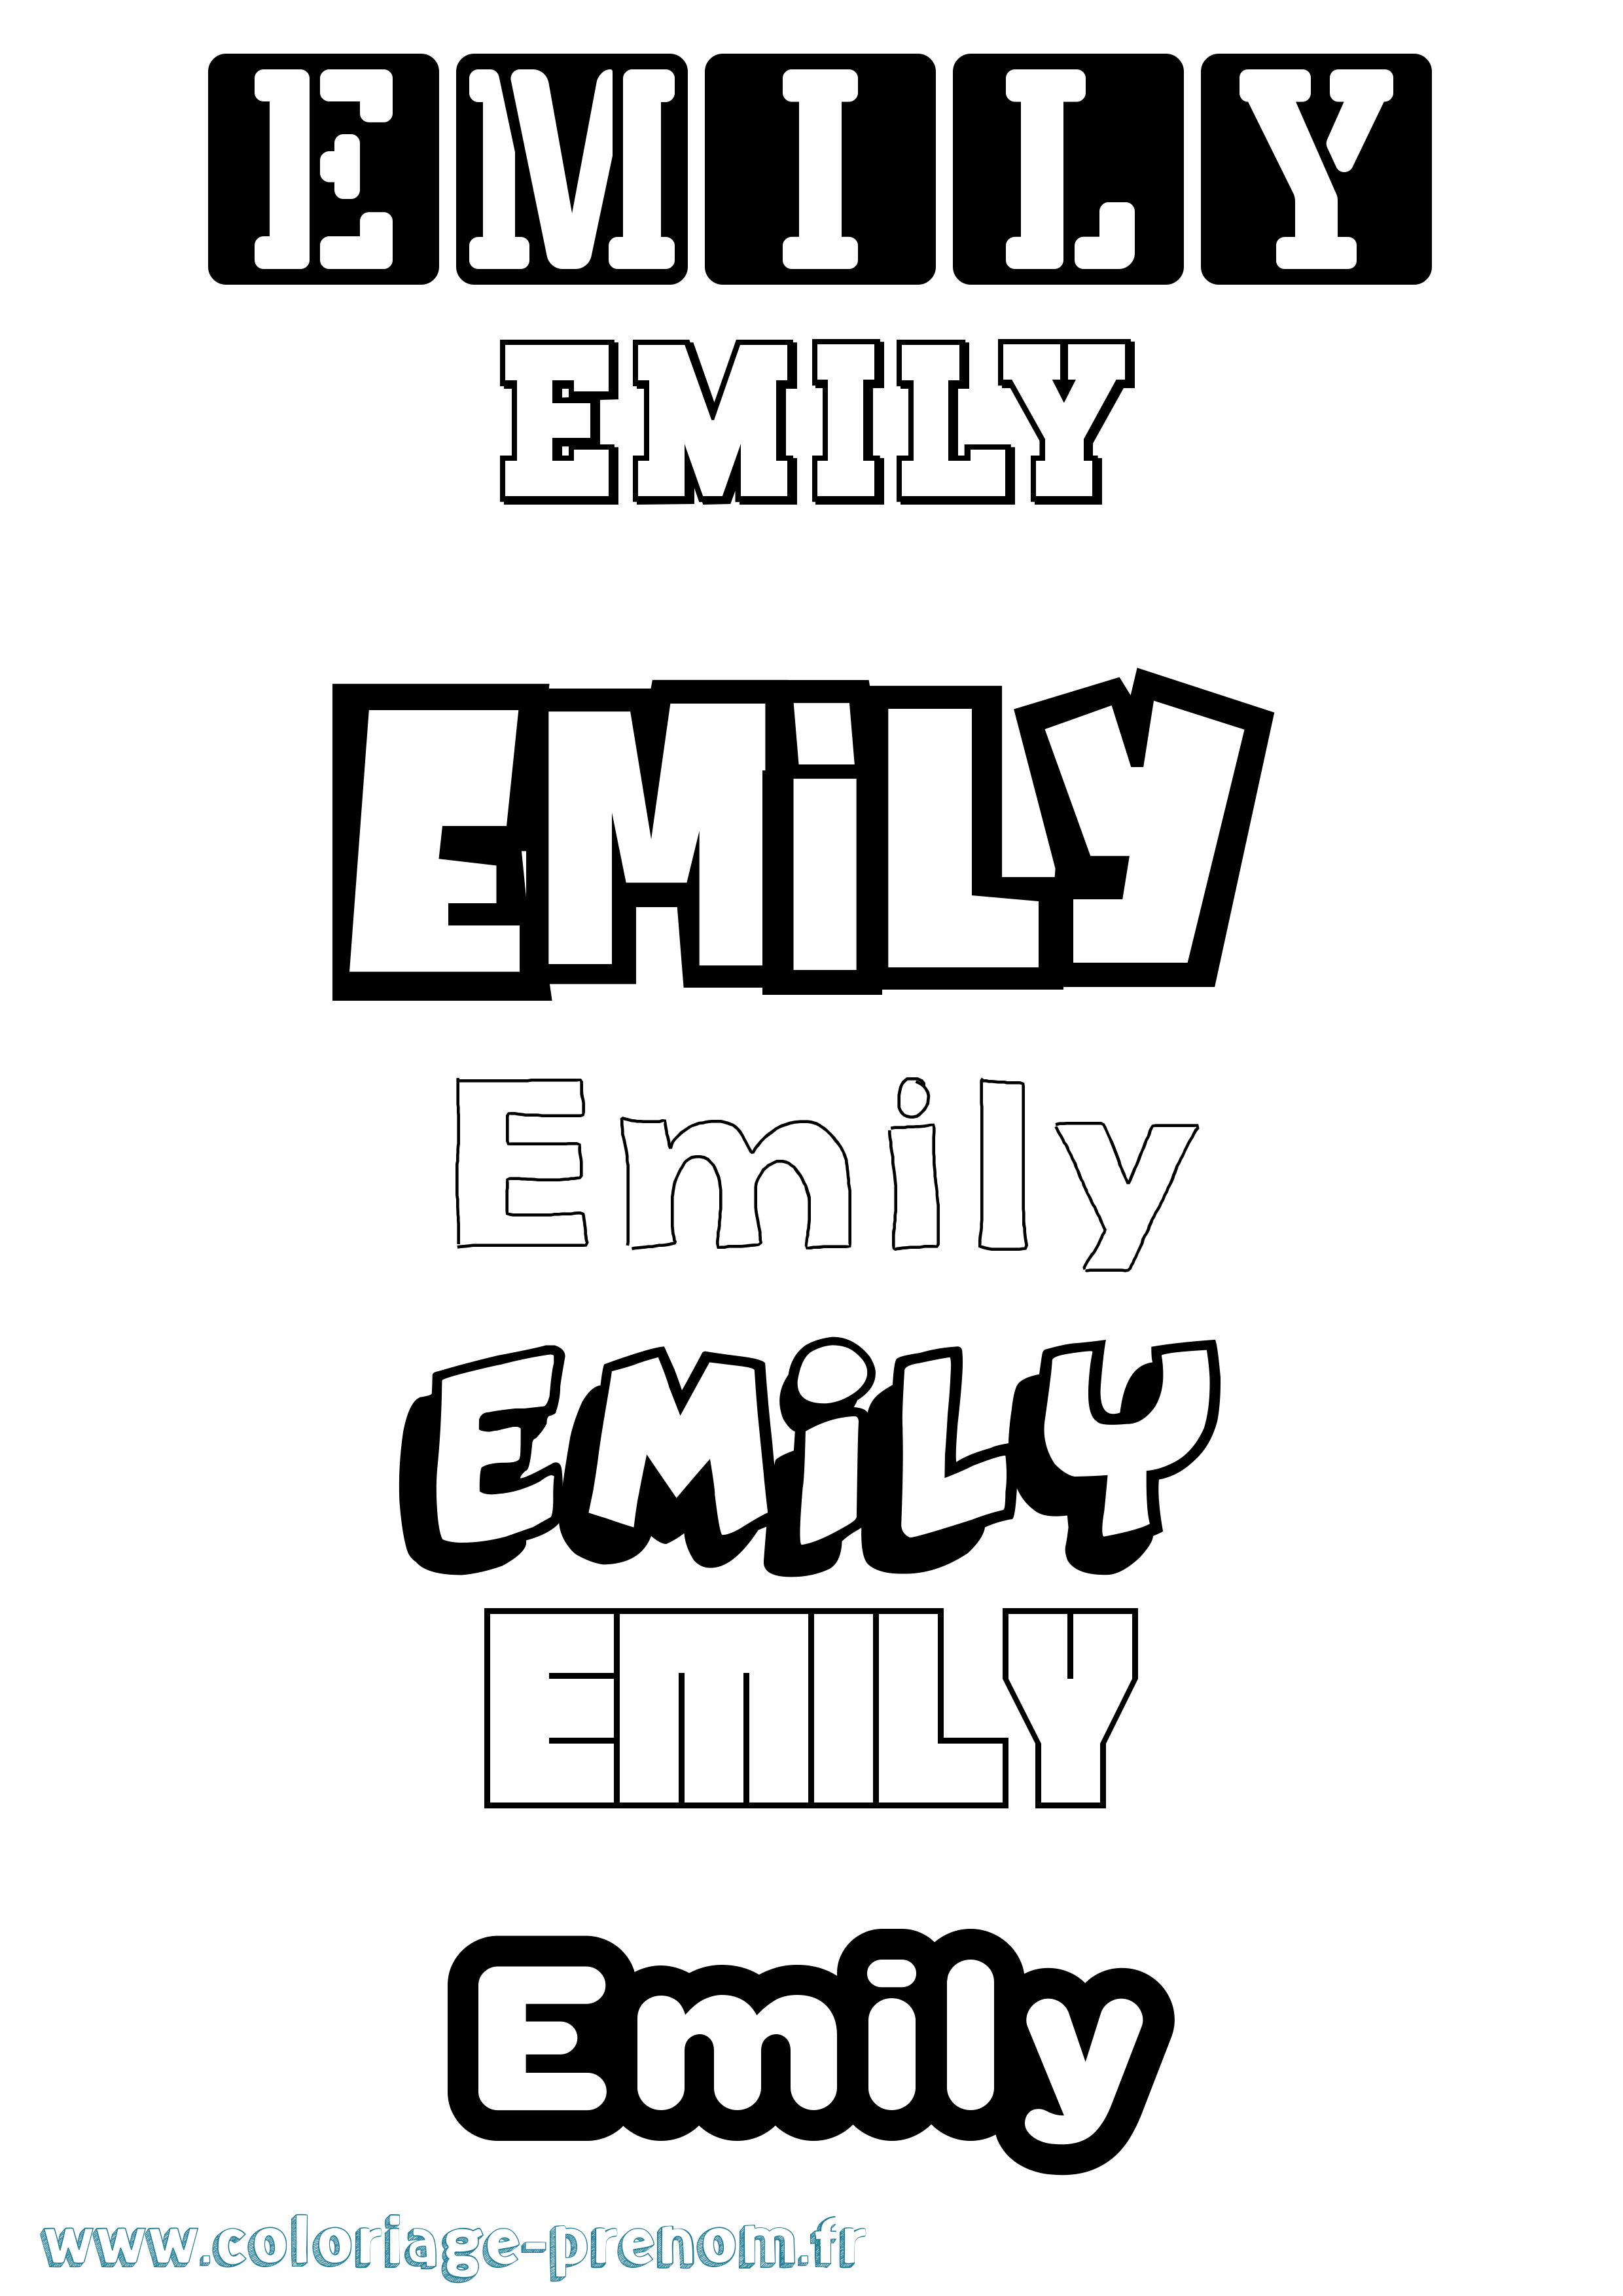 Coloriage prénom Emily